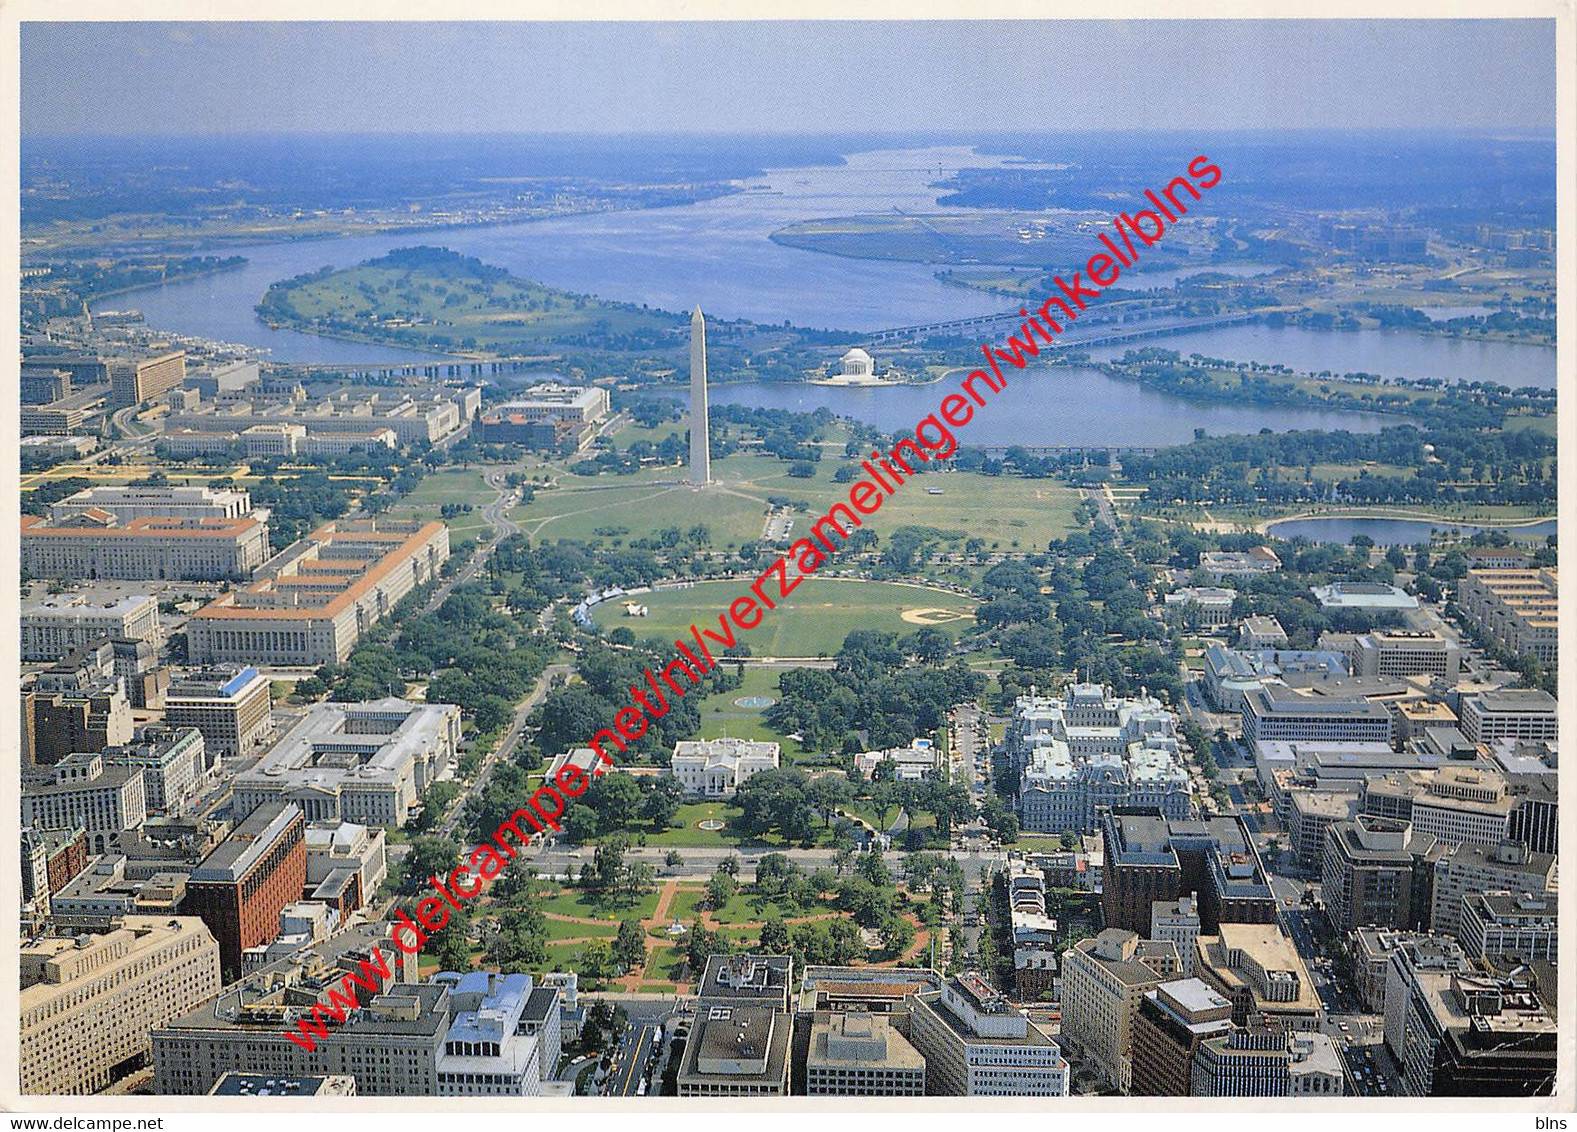 The Greater Washington D.C. Area - Washington D.C. - United States USA - Washington DC